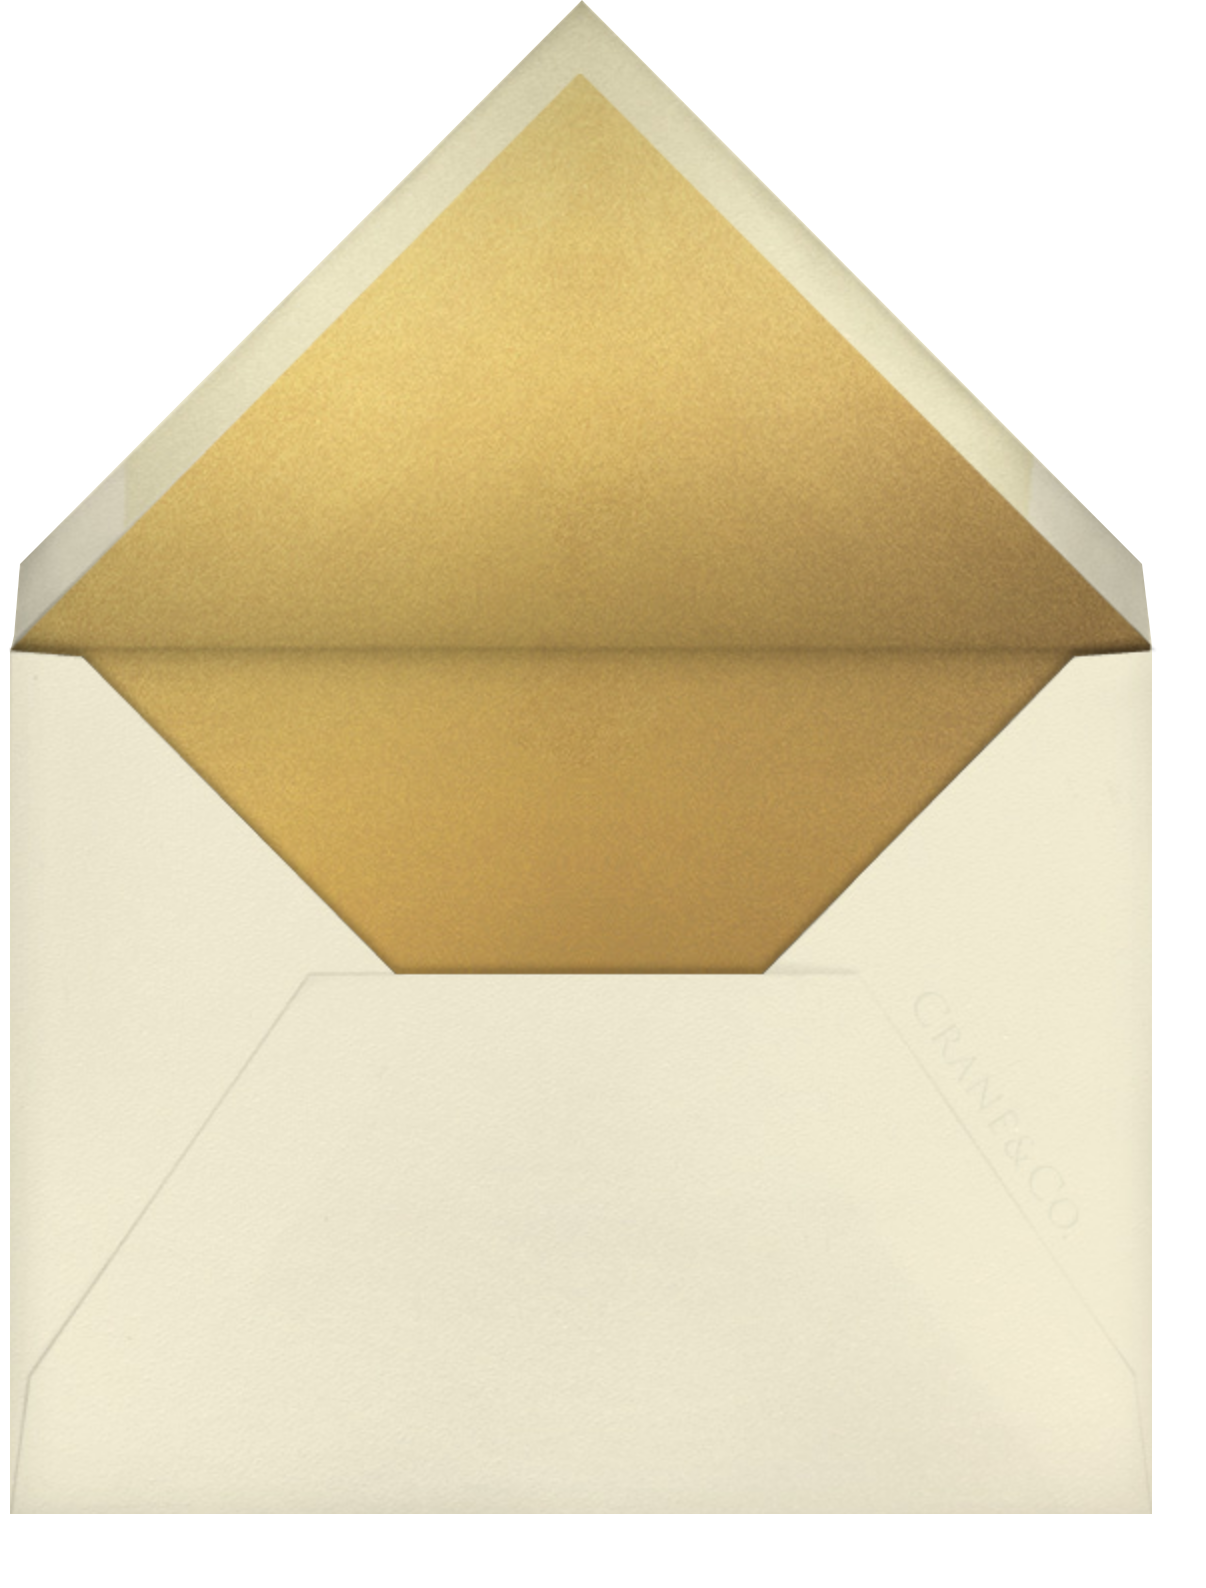 Gala (Thank You) - Medium Gold - Kelly Wearstler - Envelope